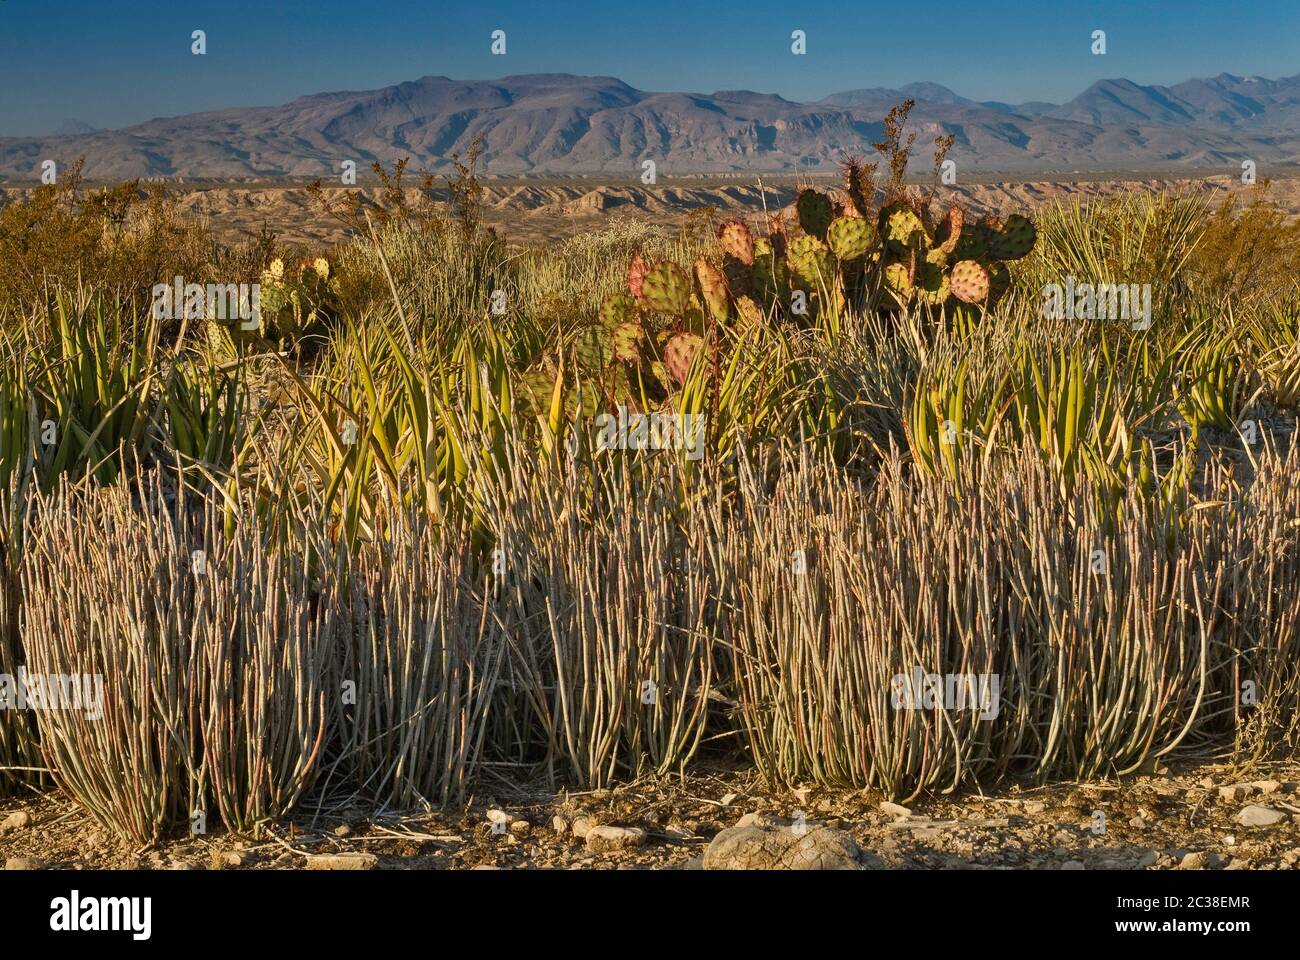 Candelillas, aleros lechuguilla y peras espinosas, Chisos en el dist, Old Ore Road en el Desierto de Chihuahua en el Parque Nacional Big Bend, Texas, EE.UU Foto de stock